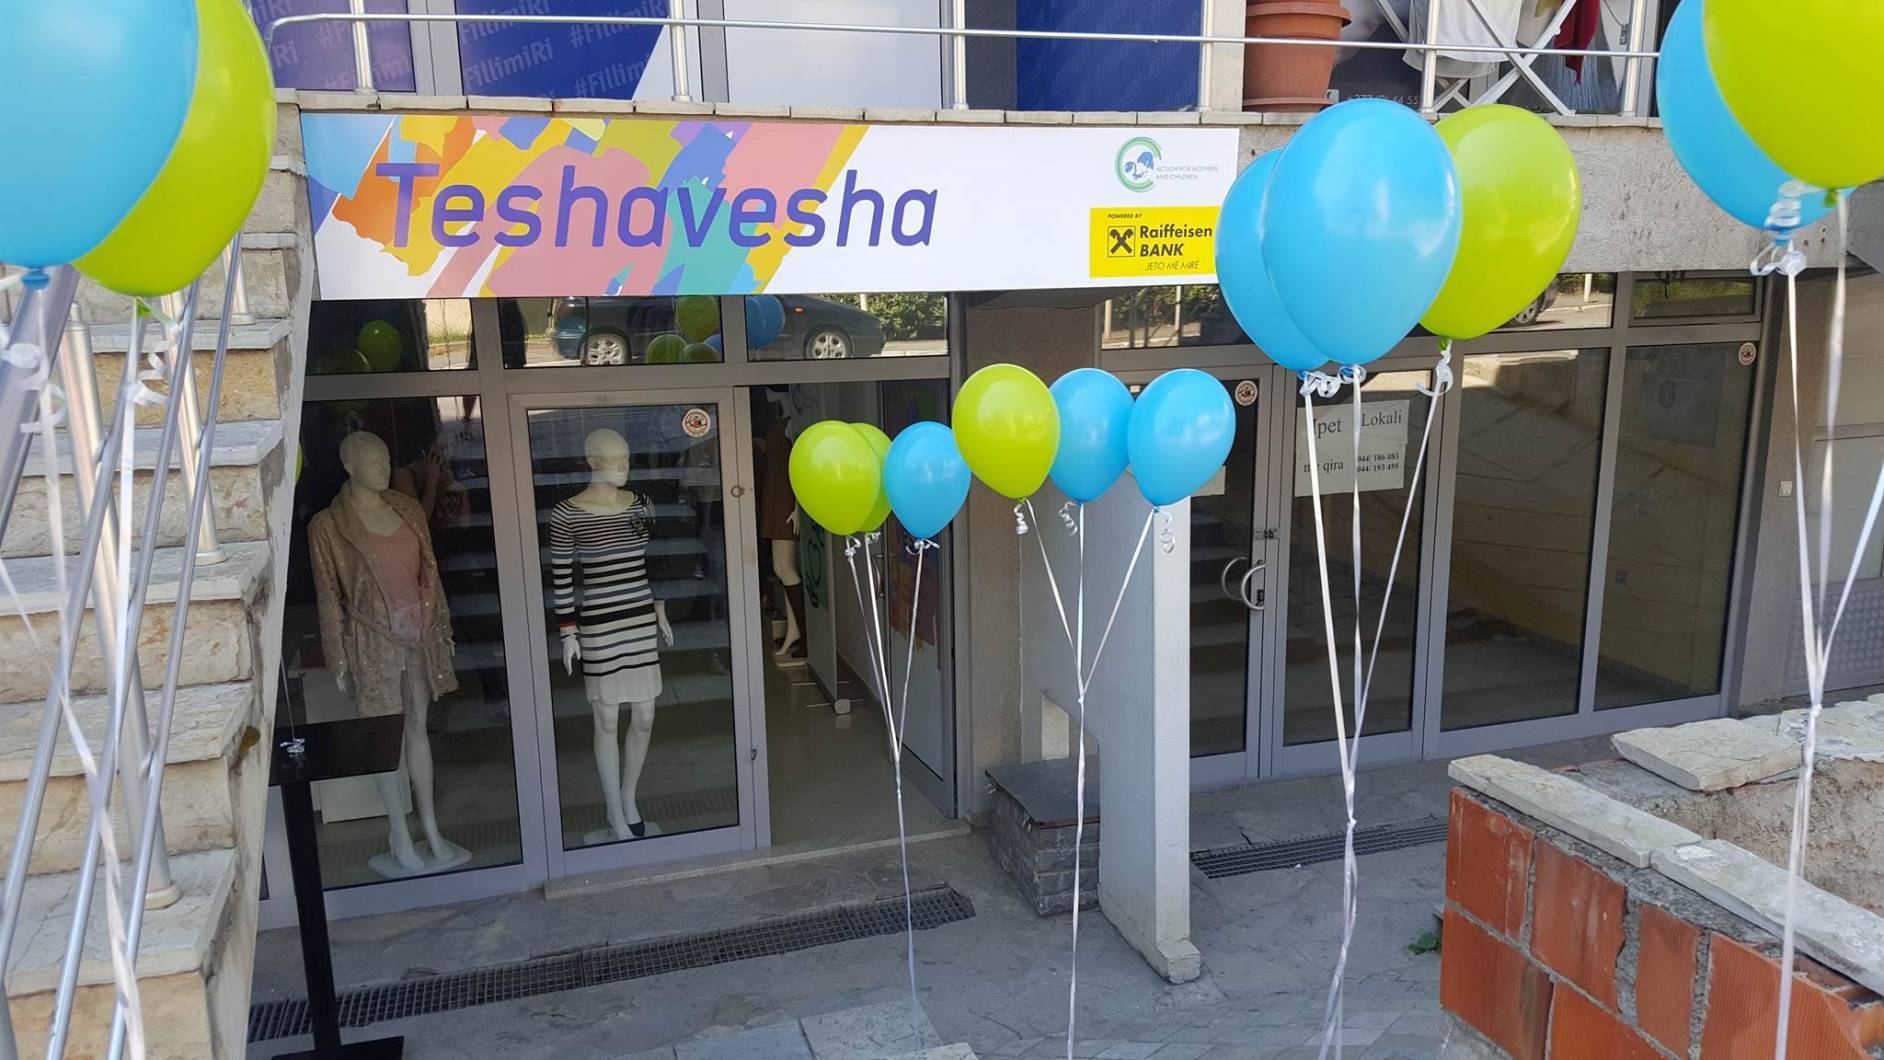 Bëhet hapja e pikës së dytë të dyqanit bamirës Teshavesha